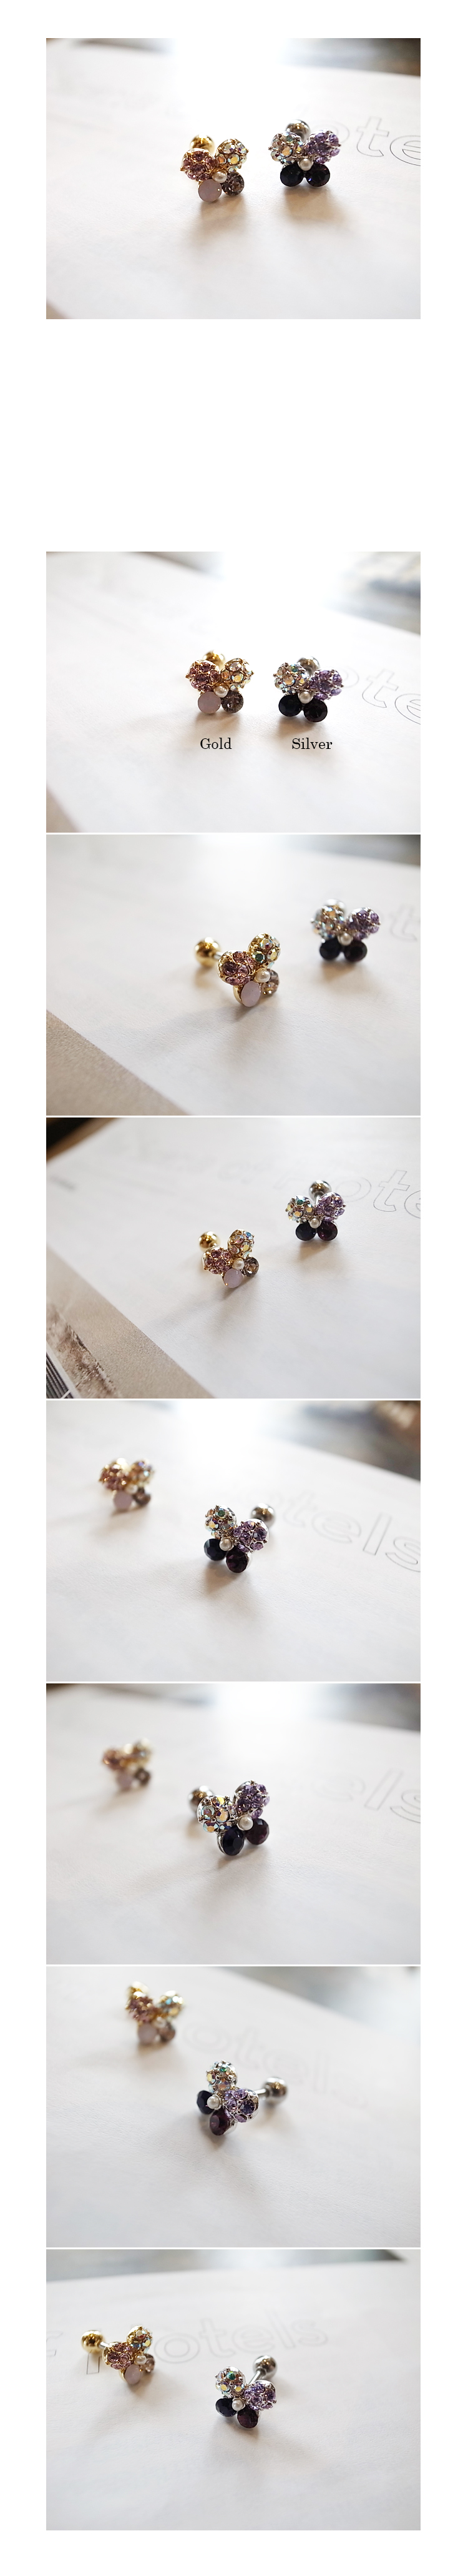 韓國 NaniWorld 混色蝴蝶耳環 (單入) #3186 銀色